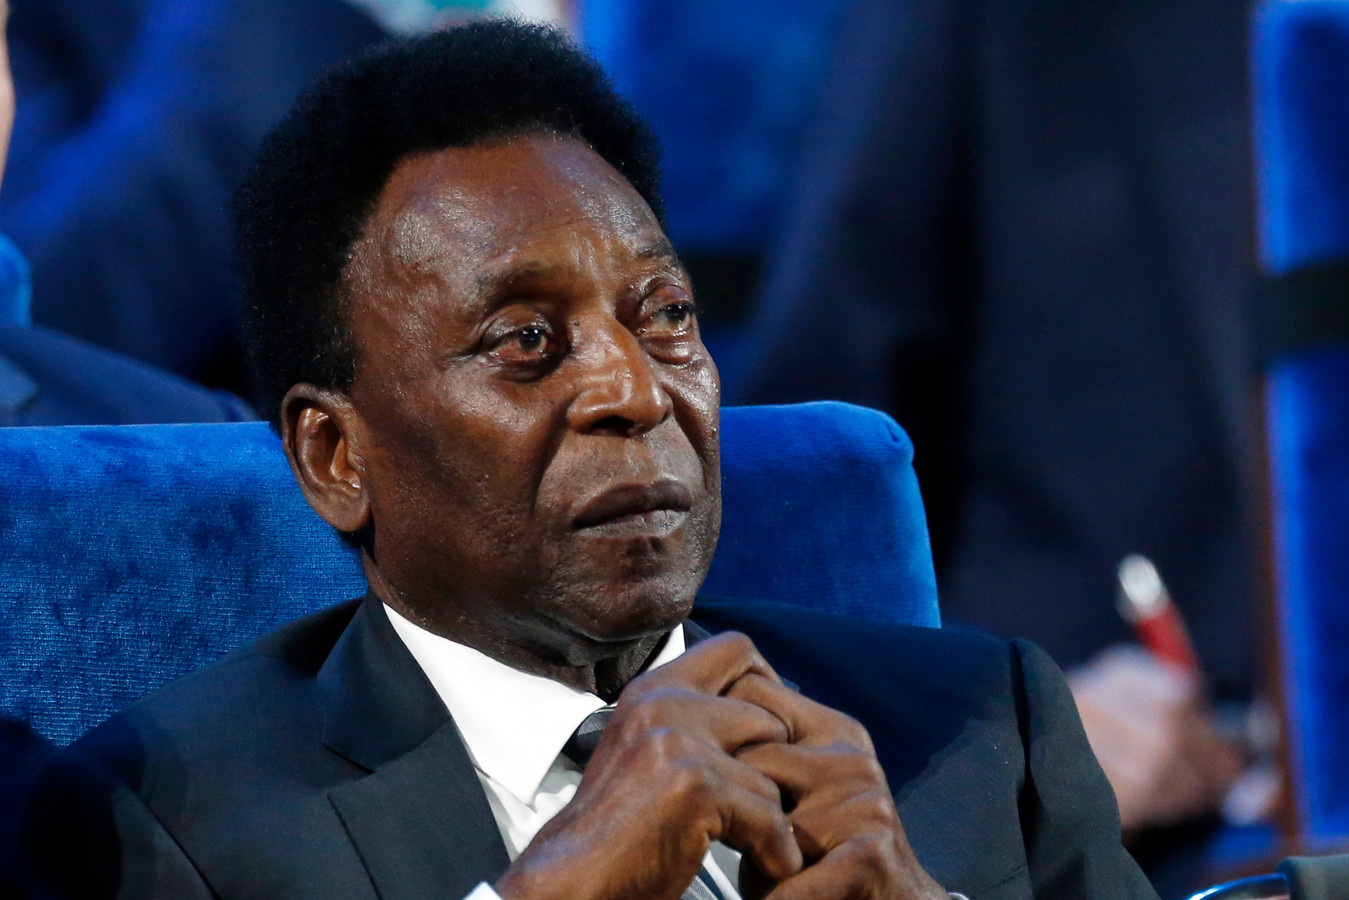 En février 2020, Pelé avait tenu à rassurer ses admirateurs sur sa santé mentale, après des propos de son fils Edinho affirmant qu’il vivait “reclus” et souffrait “d’une certaine forme de dépression”.